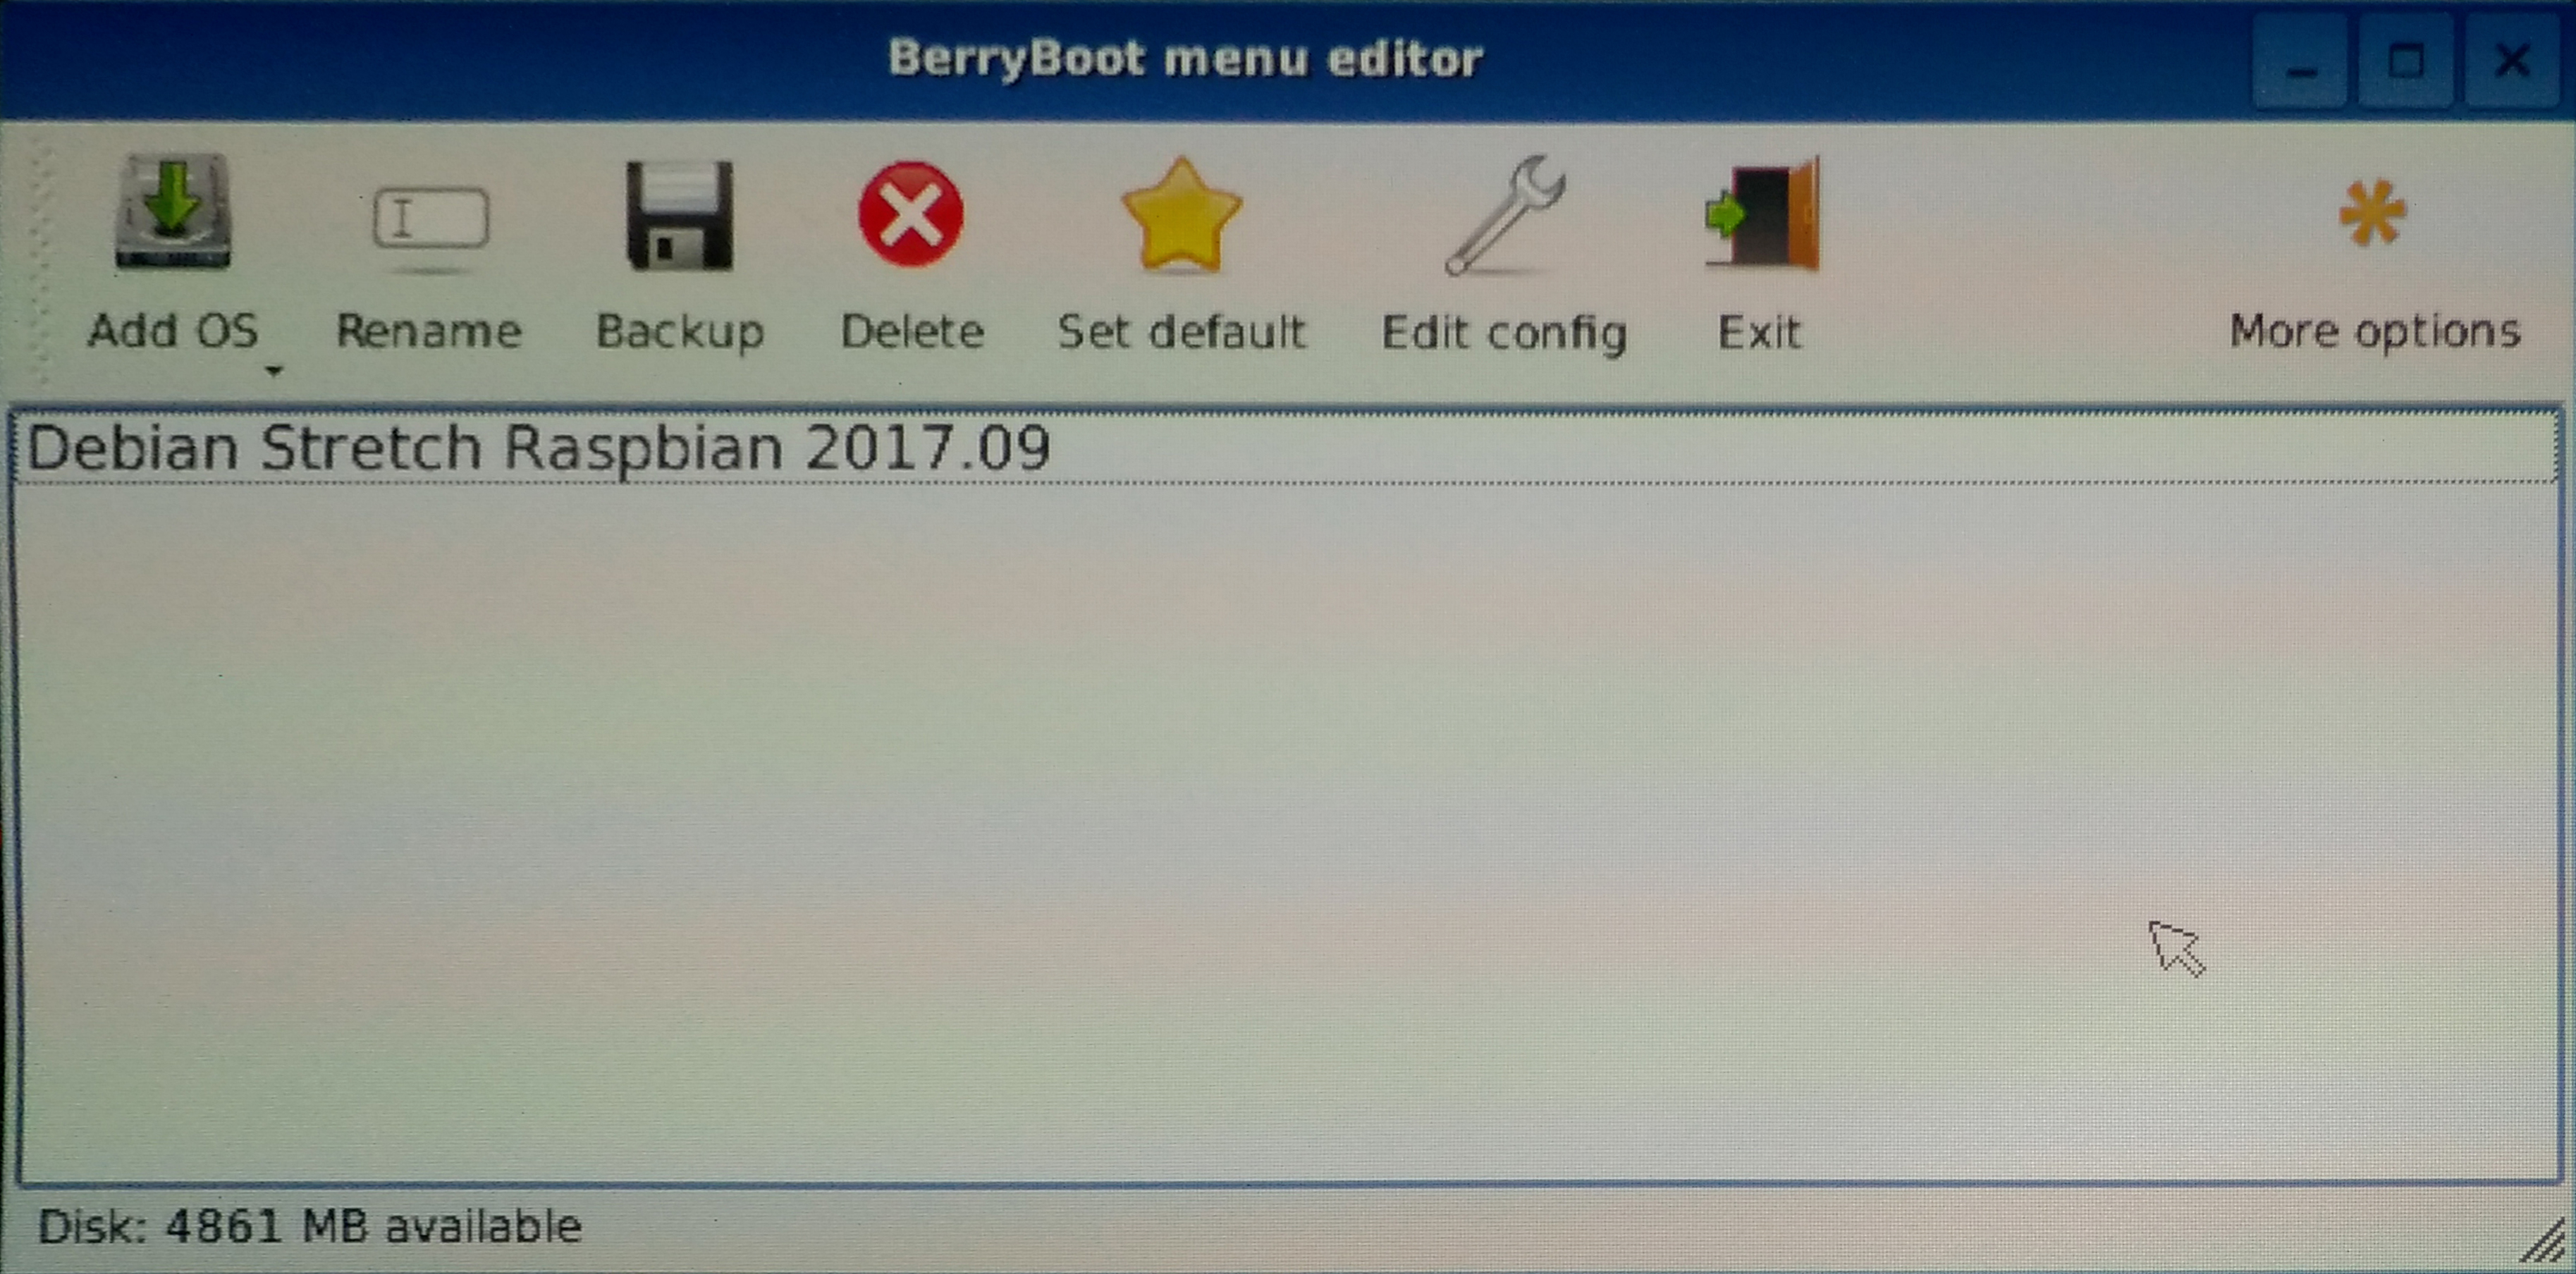 Pantalla de configuración de BerryBoot